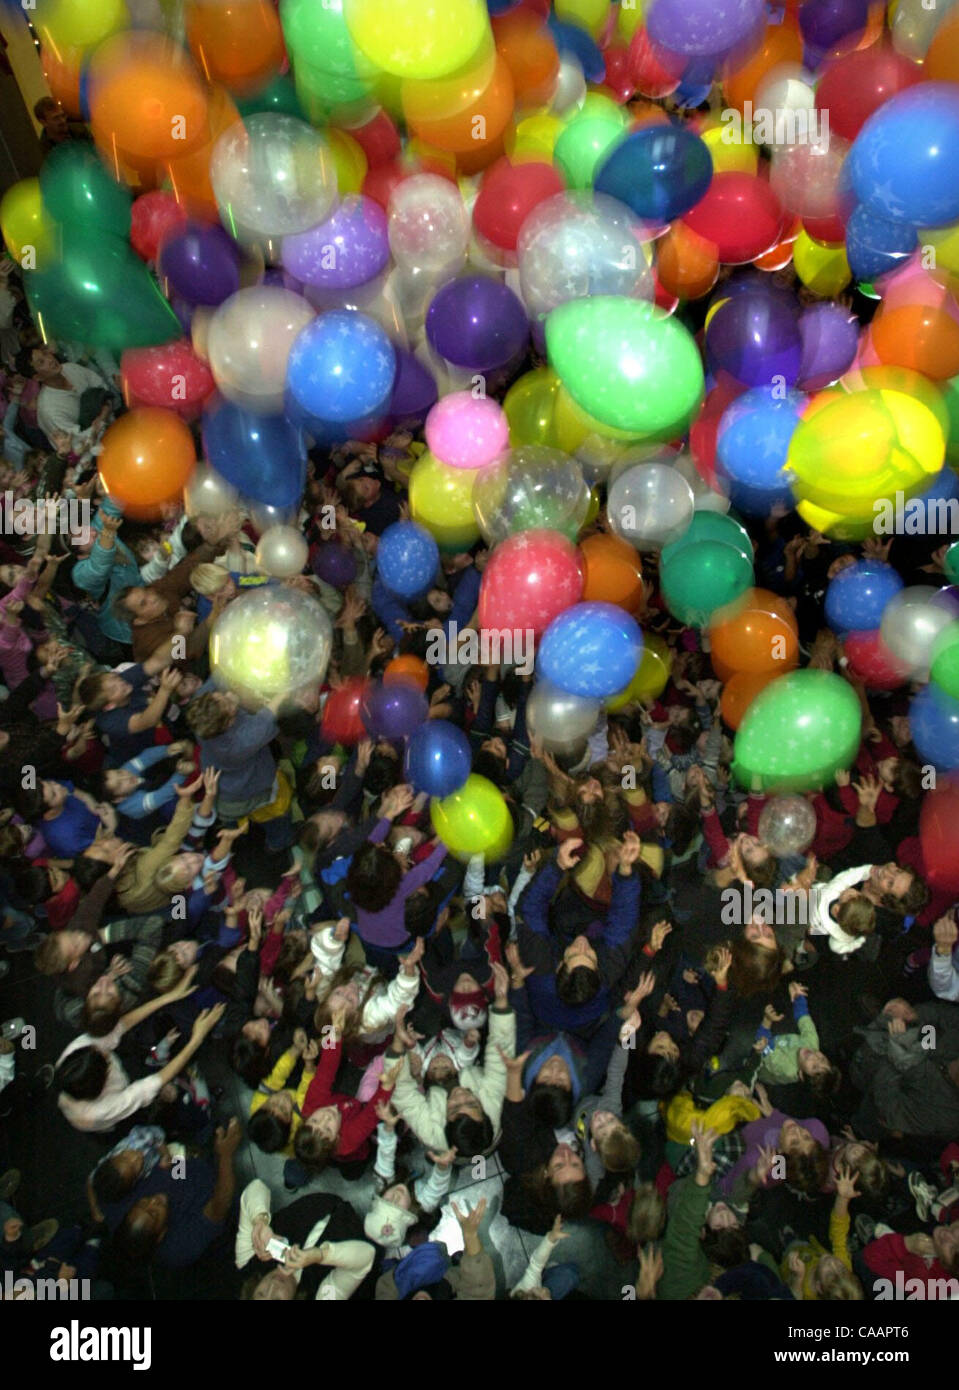 A las 4:00pm niños y padres para llegar a caer globos en la rotonda de Chabot Space & Science Center, que celebran el Año Nuevo de 2004 a la medianoche en Greenwich, Inglaterra tiempo en Oakland, California, el miércoles, 31 de diciembre de 2003. 12/31/03 (Contra Costa Times/DOUG DURAN) 04DROP1.jpg Foto de stock